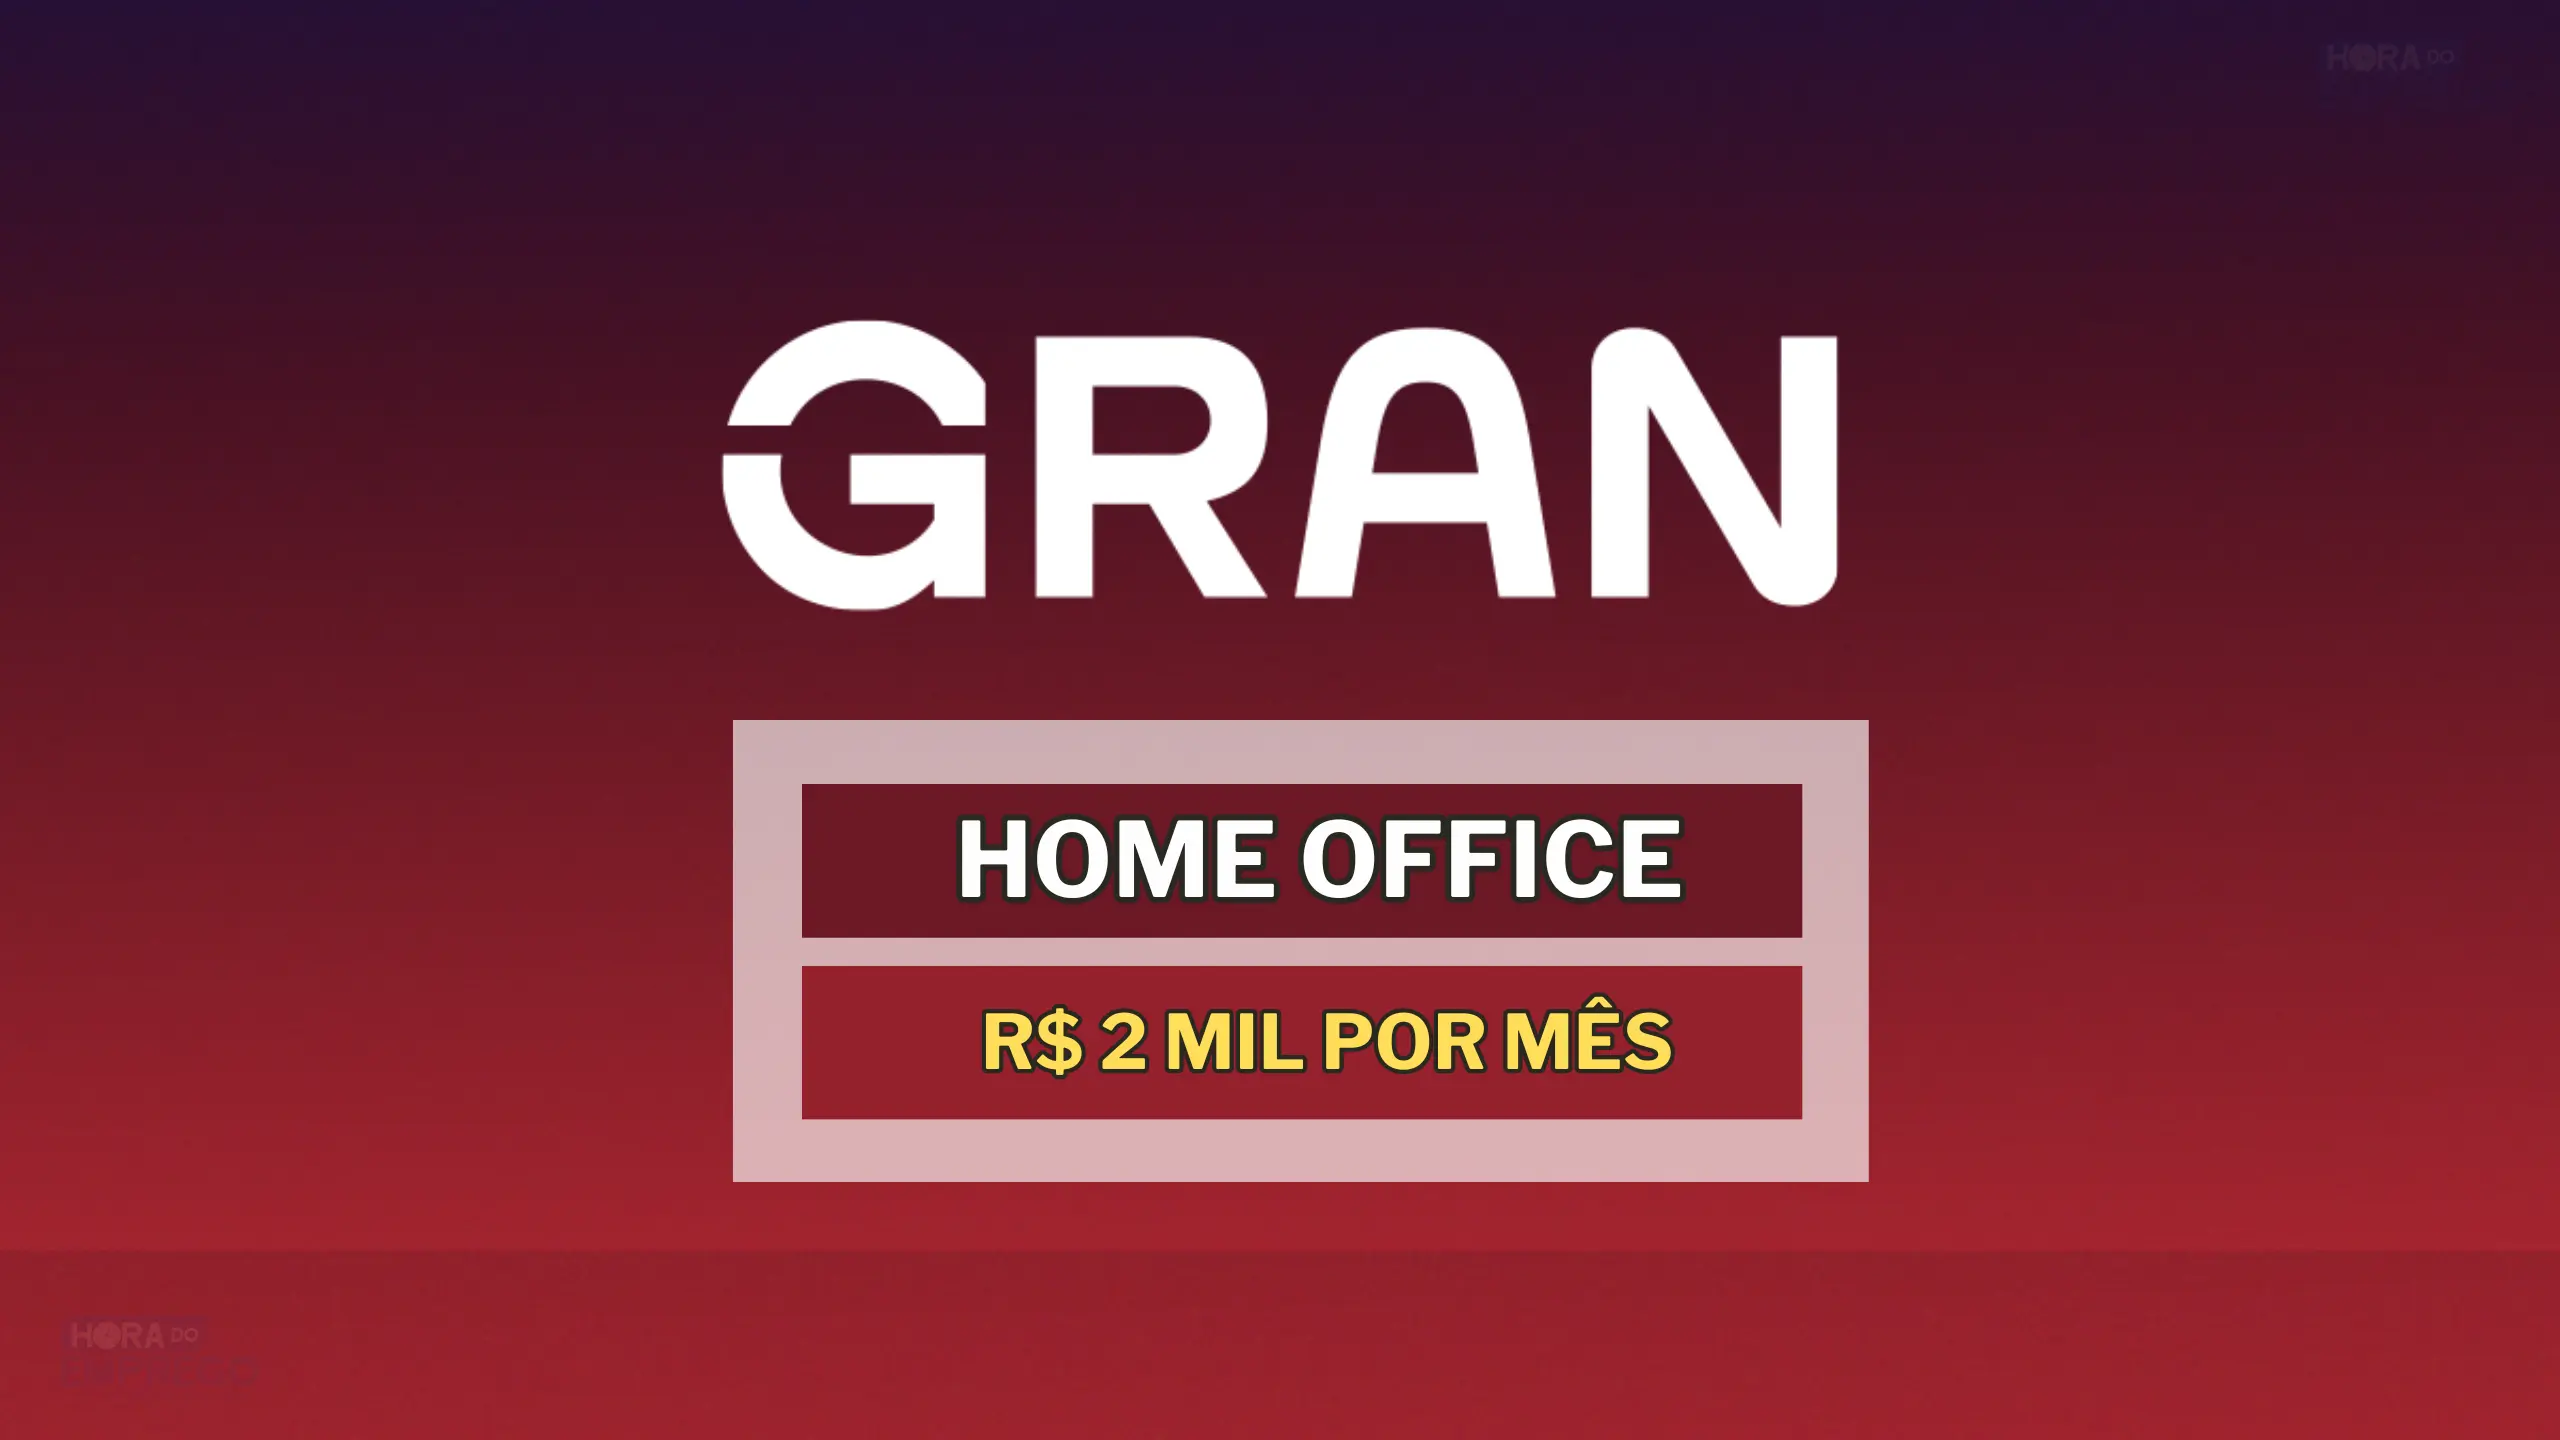 Home Office: Grupo Gran Cursos anuncia vaga HOME OFFICE para Assistente Administrativo com salário de até 2 MIL por mês